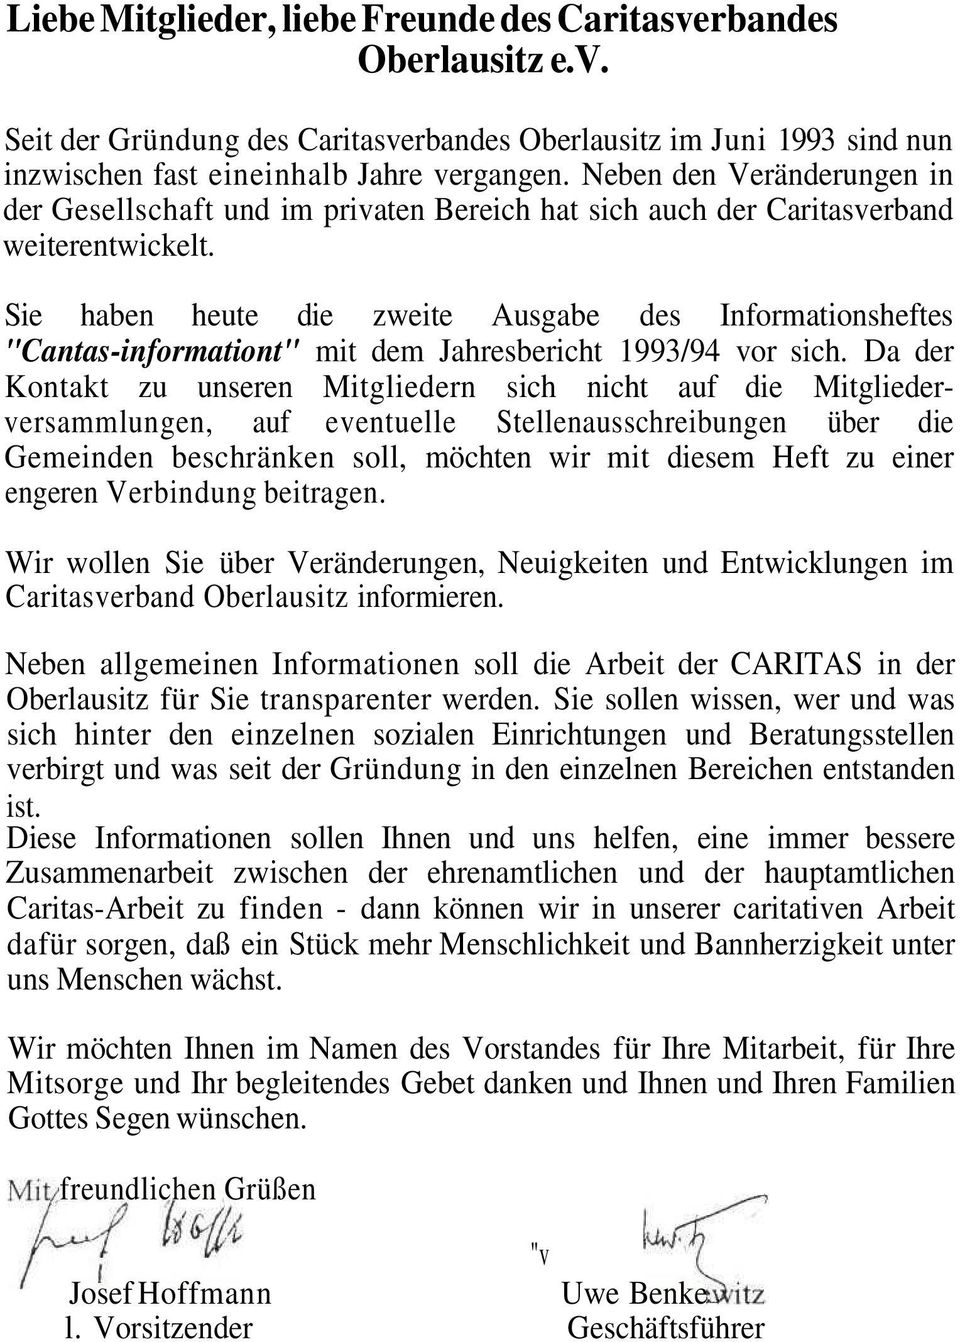 Sie haben heute die zweite Ausgabe des Informationsheftes "Cantas-informationt" mit dem Jahresbericht 1993/94 vor sich.